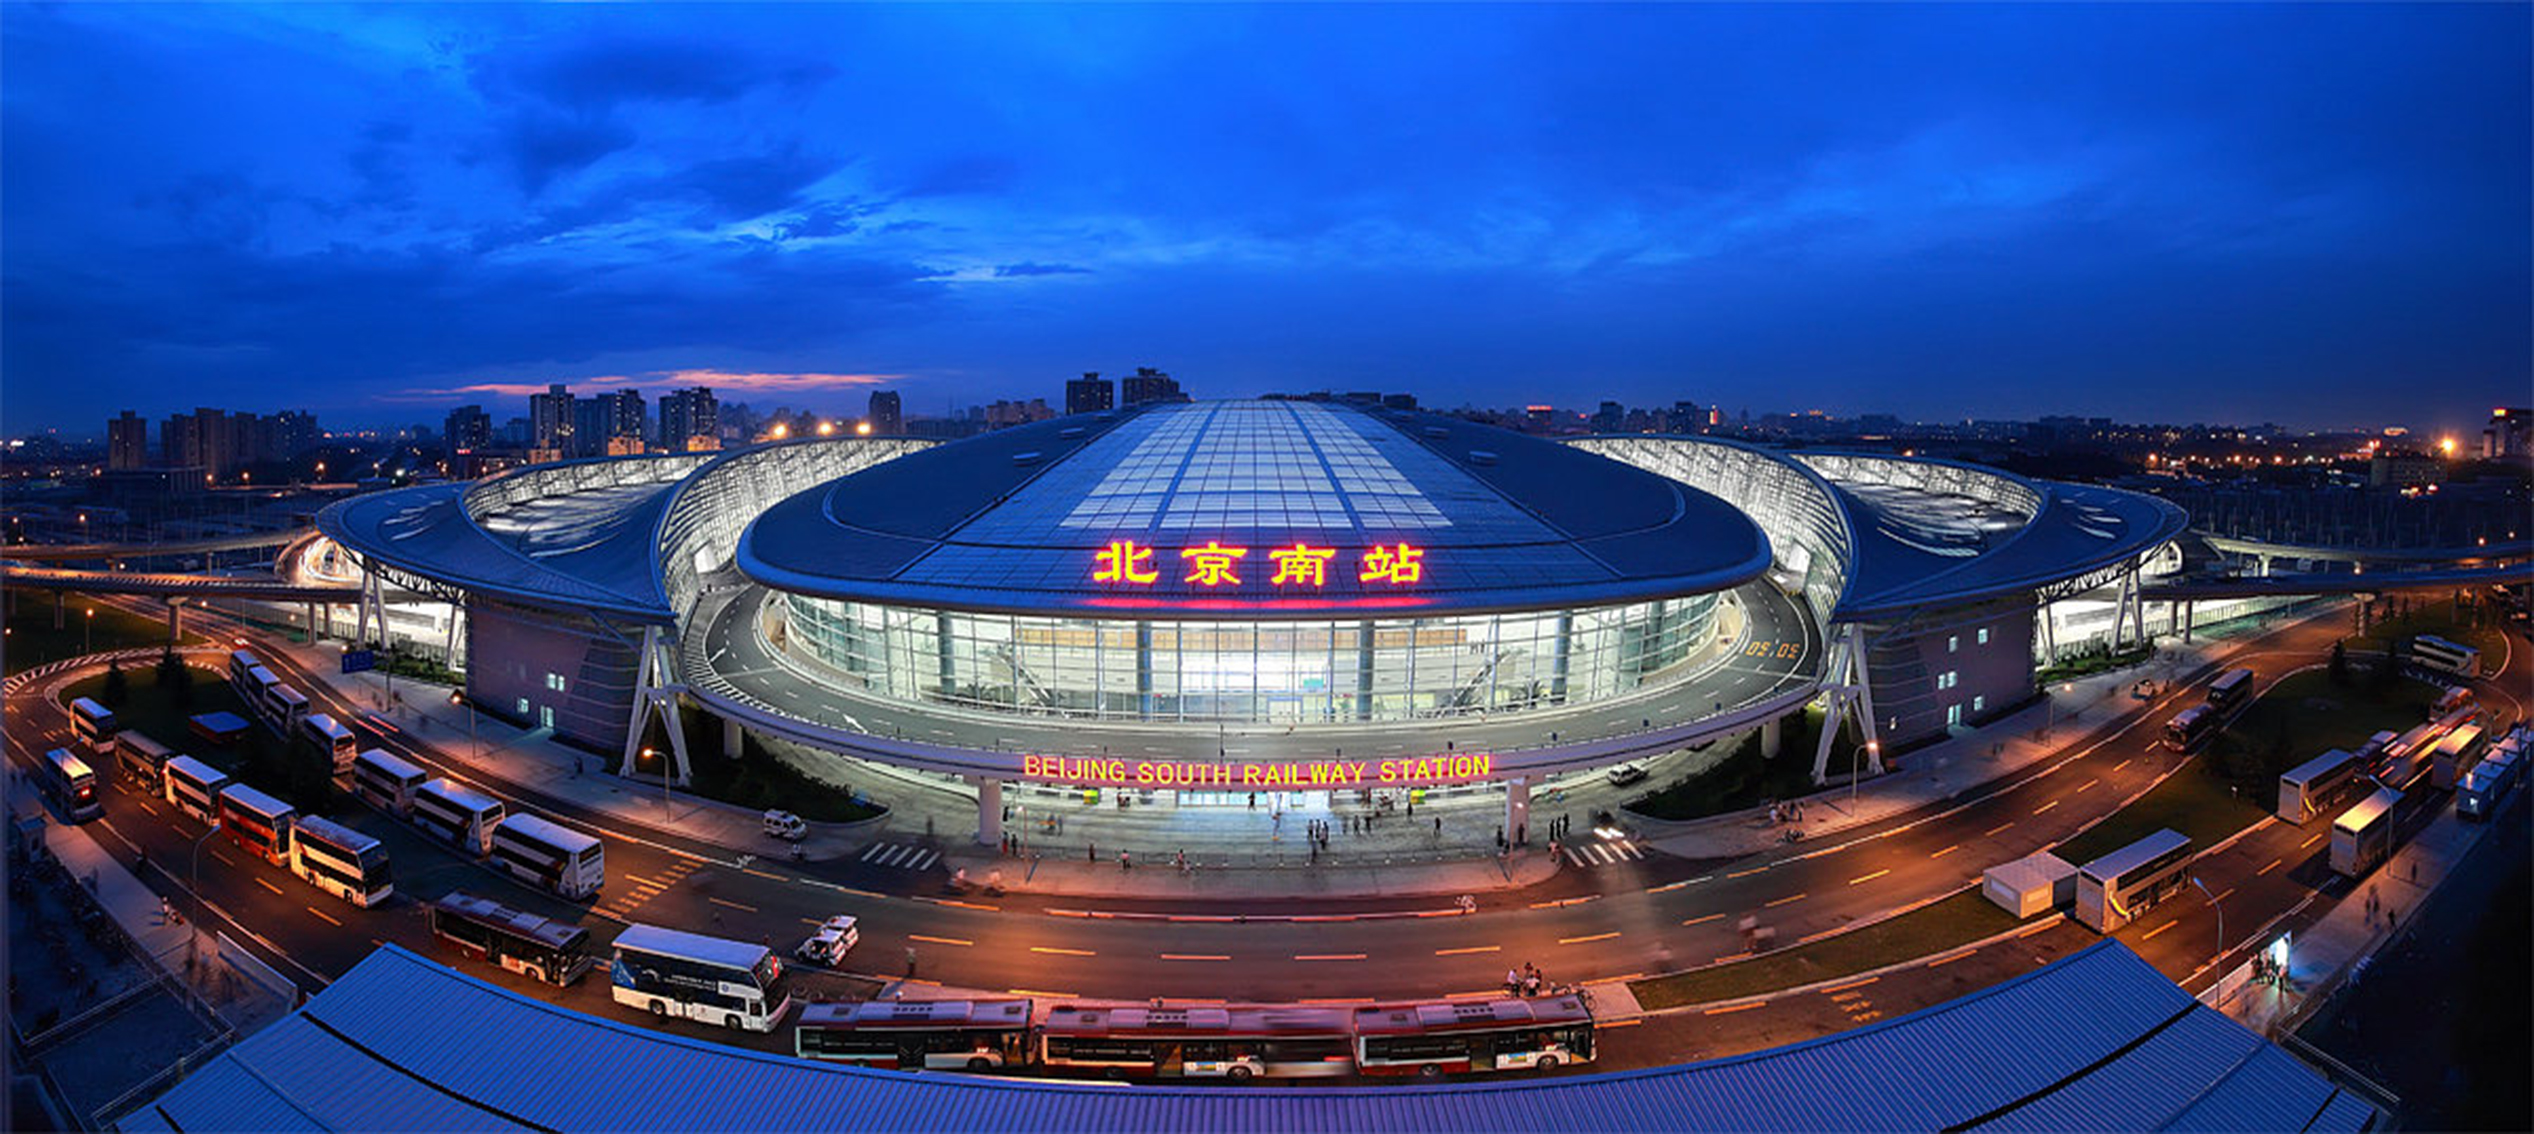 北京南站照片高清图片